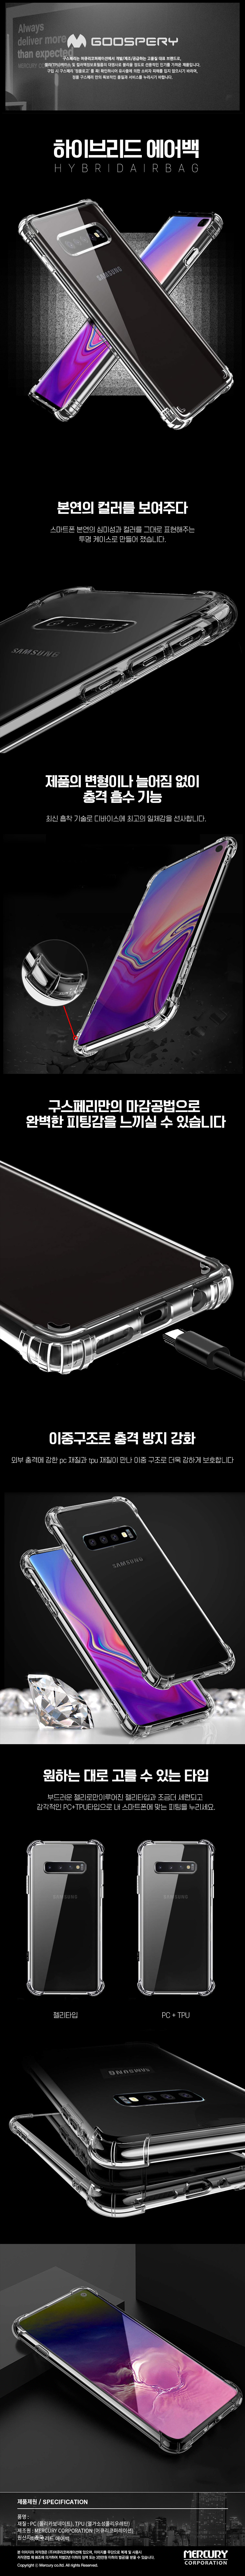 갤럭시S10 5G(G977) 하이브리드 에어백 케이스 11,900원 - 머큐리 디지털, 모바일 액세서리, 휴대폰 케이스, 삼성 바보사랑 갤럭시S10 5G(G977) 하이브리드 에어백 케이스 11,900원 - 머큐리 디지털, 모바일 액세서리, 휴대폰 케이스, 삼성 바보사랑